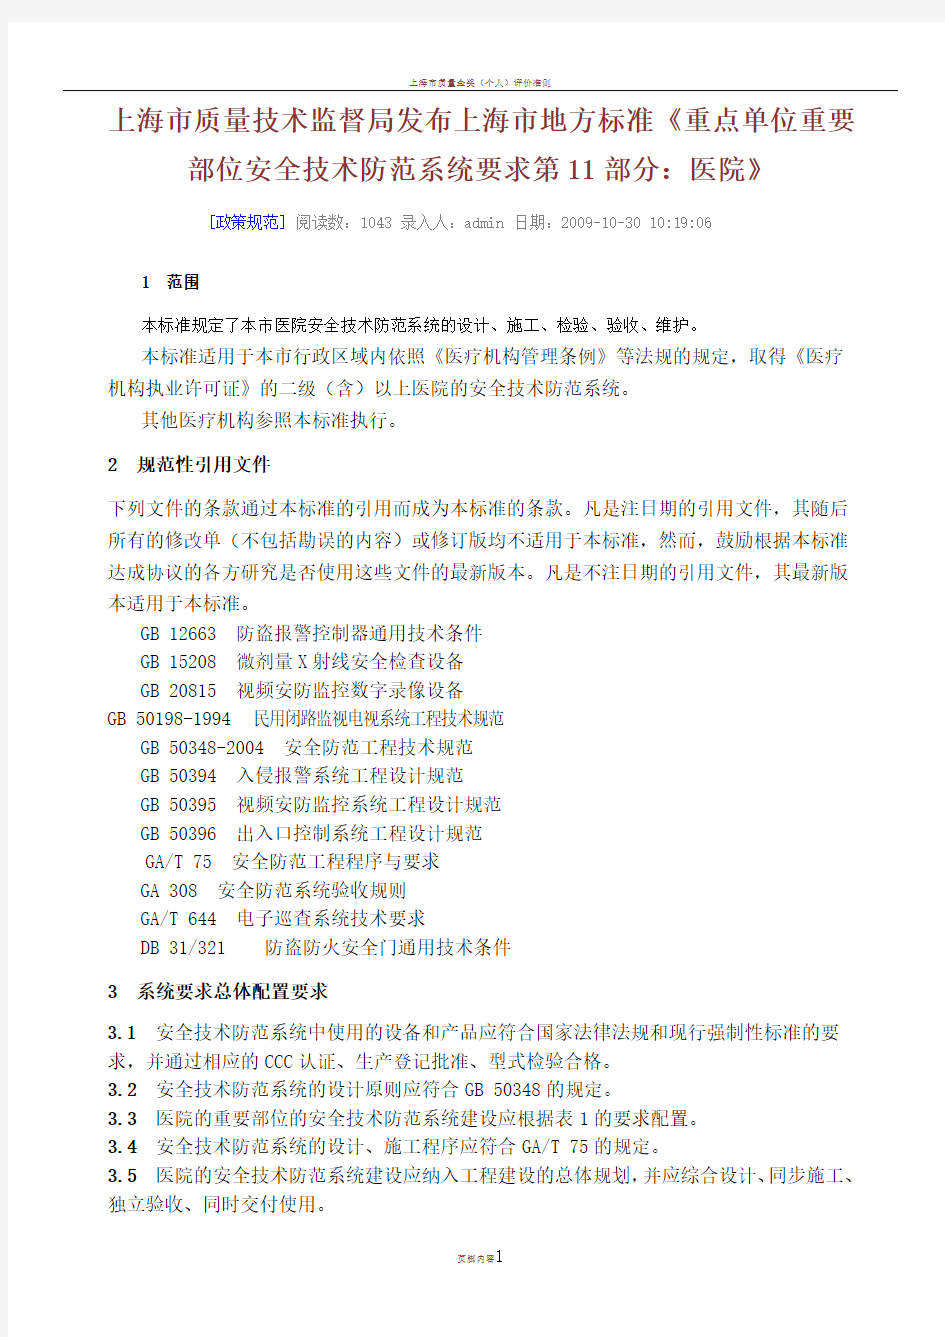 上海市质量技术监督局发布上海市地方标准《重点单位重要部位安全技术防范系统要求-》